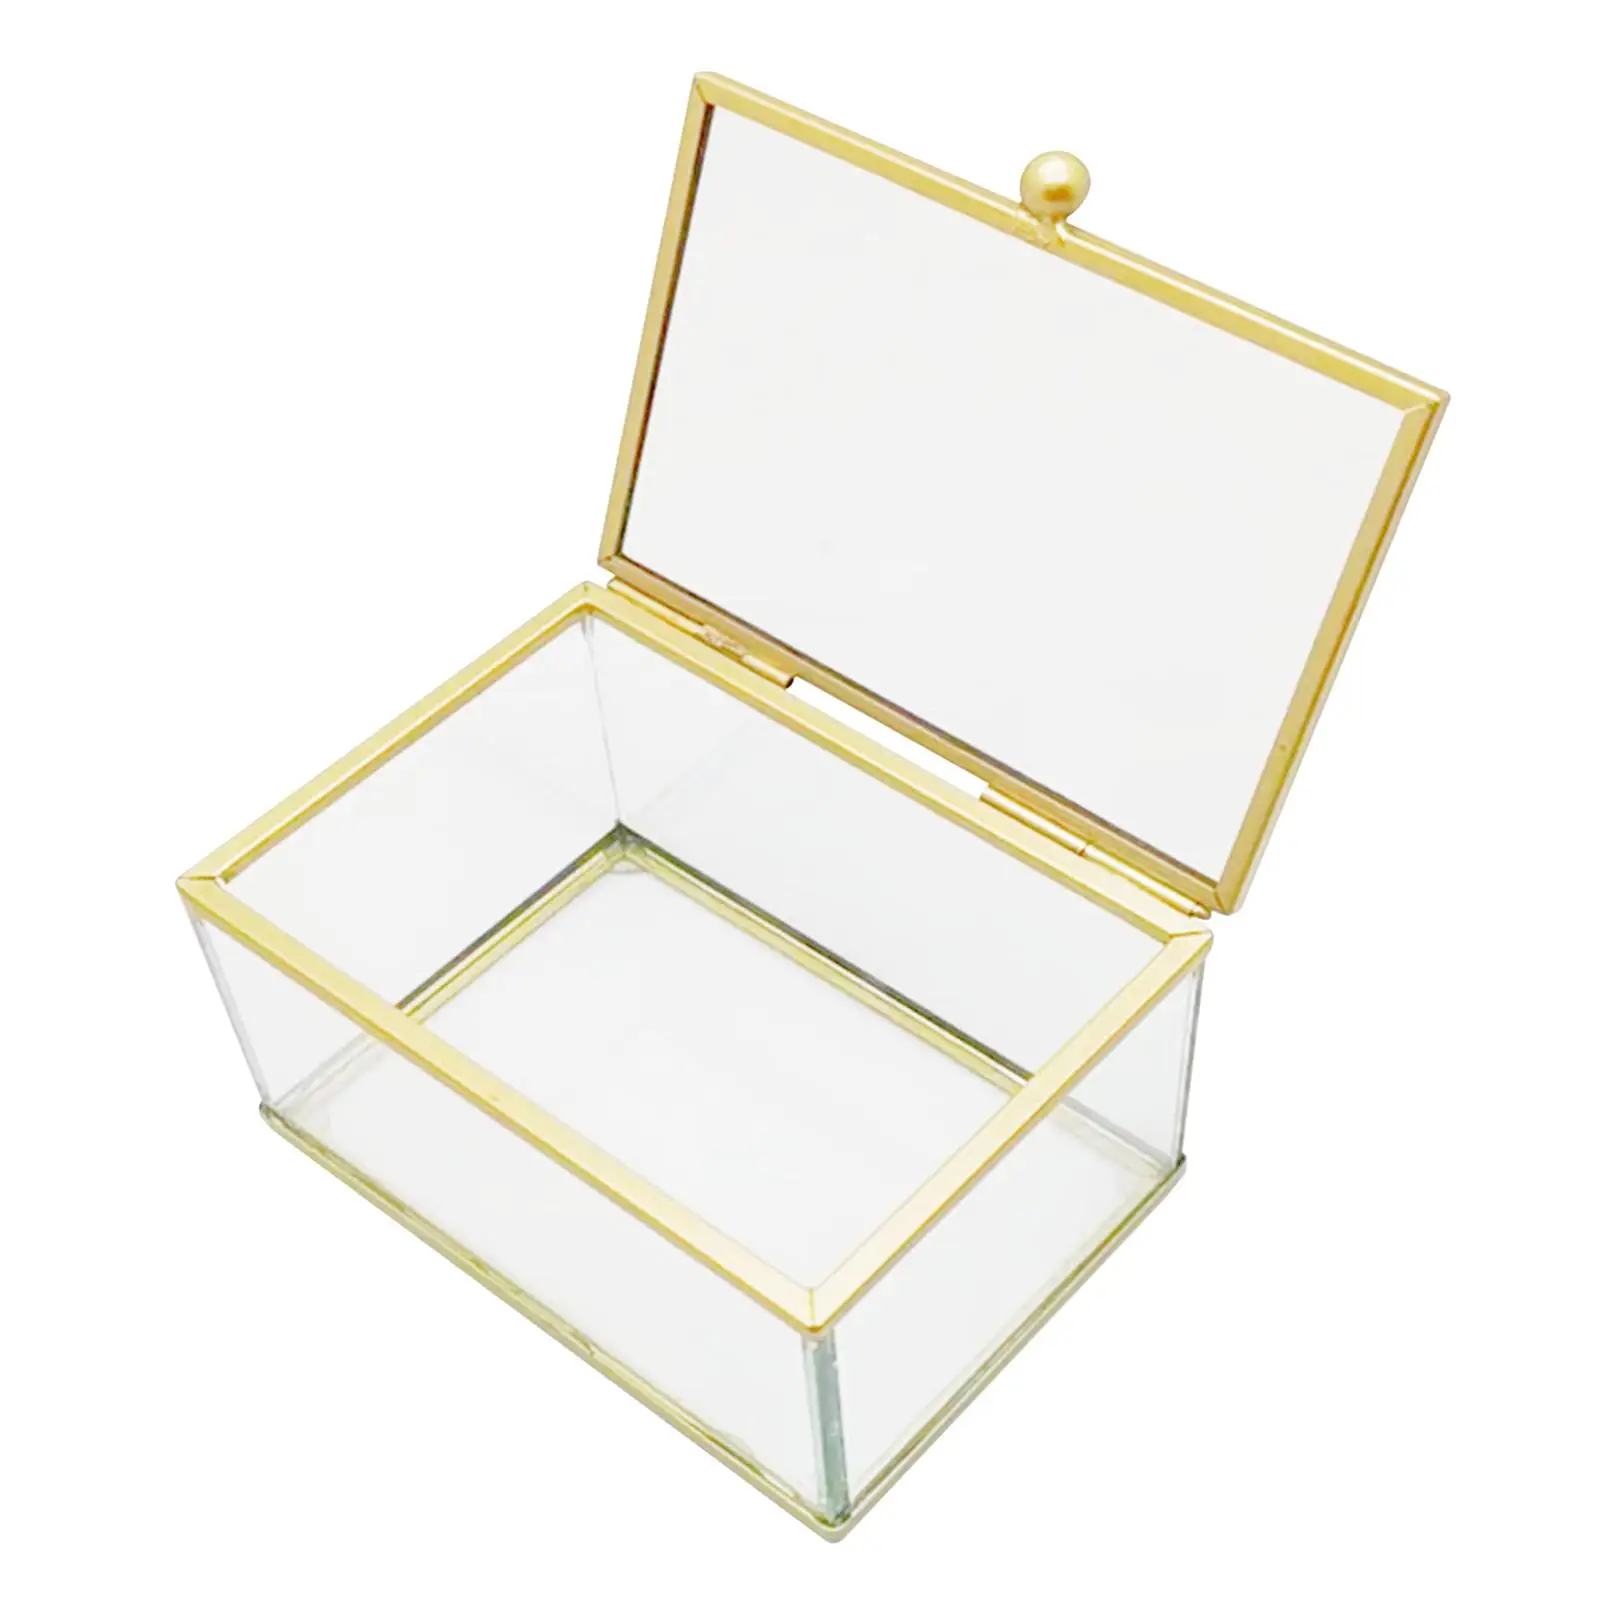 Glass Jewelry Box, Keepsake Box Storage Trinket Display Case Storage Box for Wedding